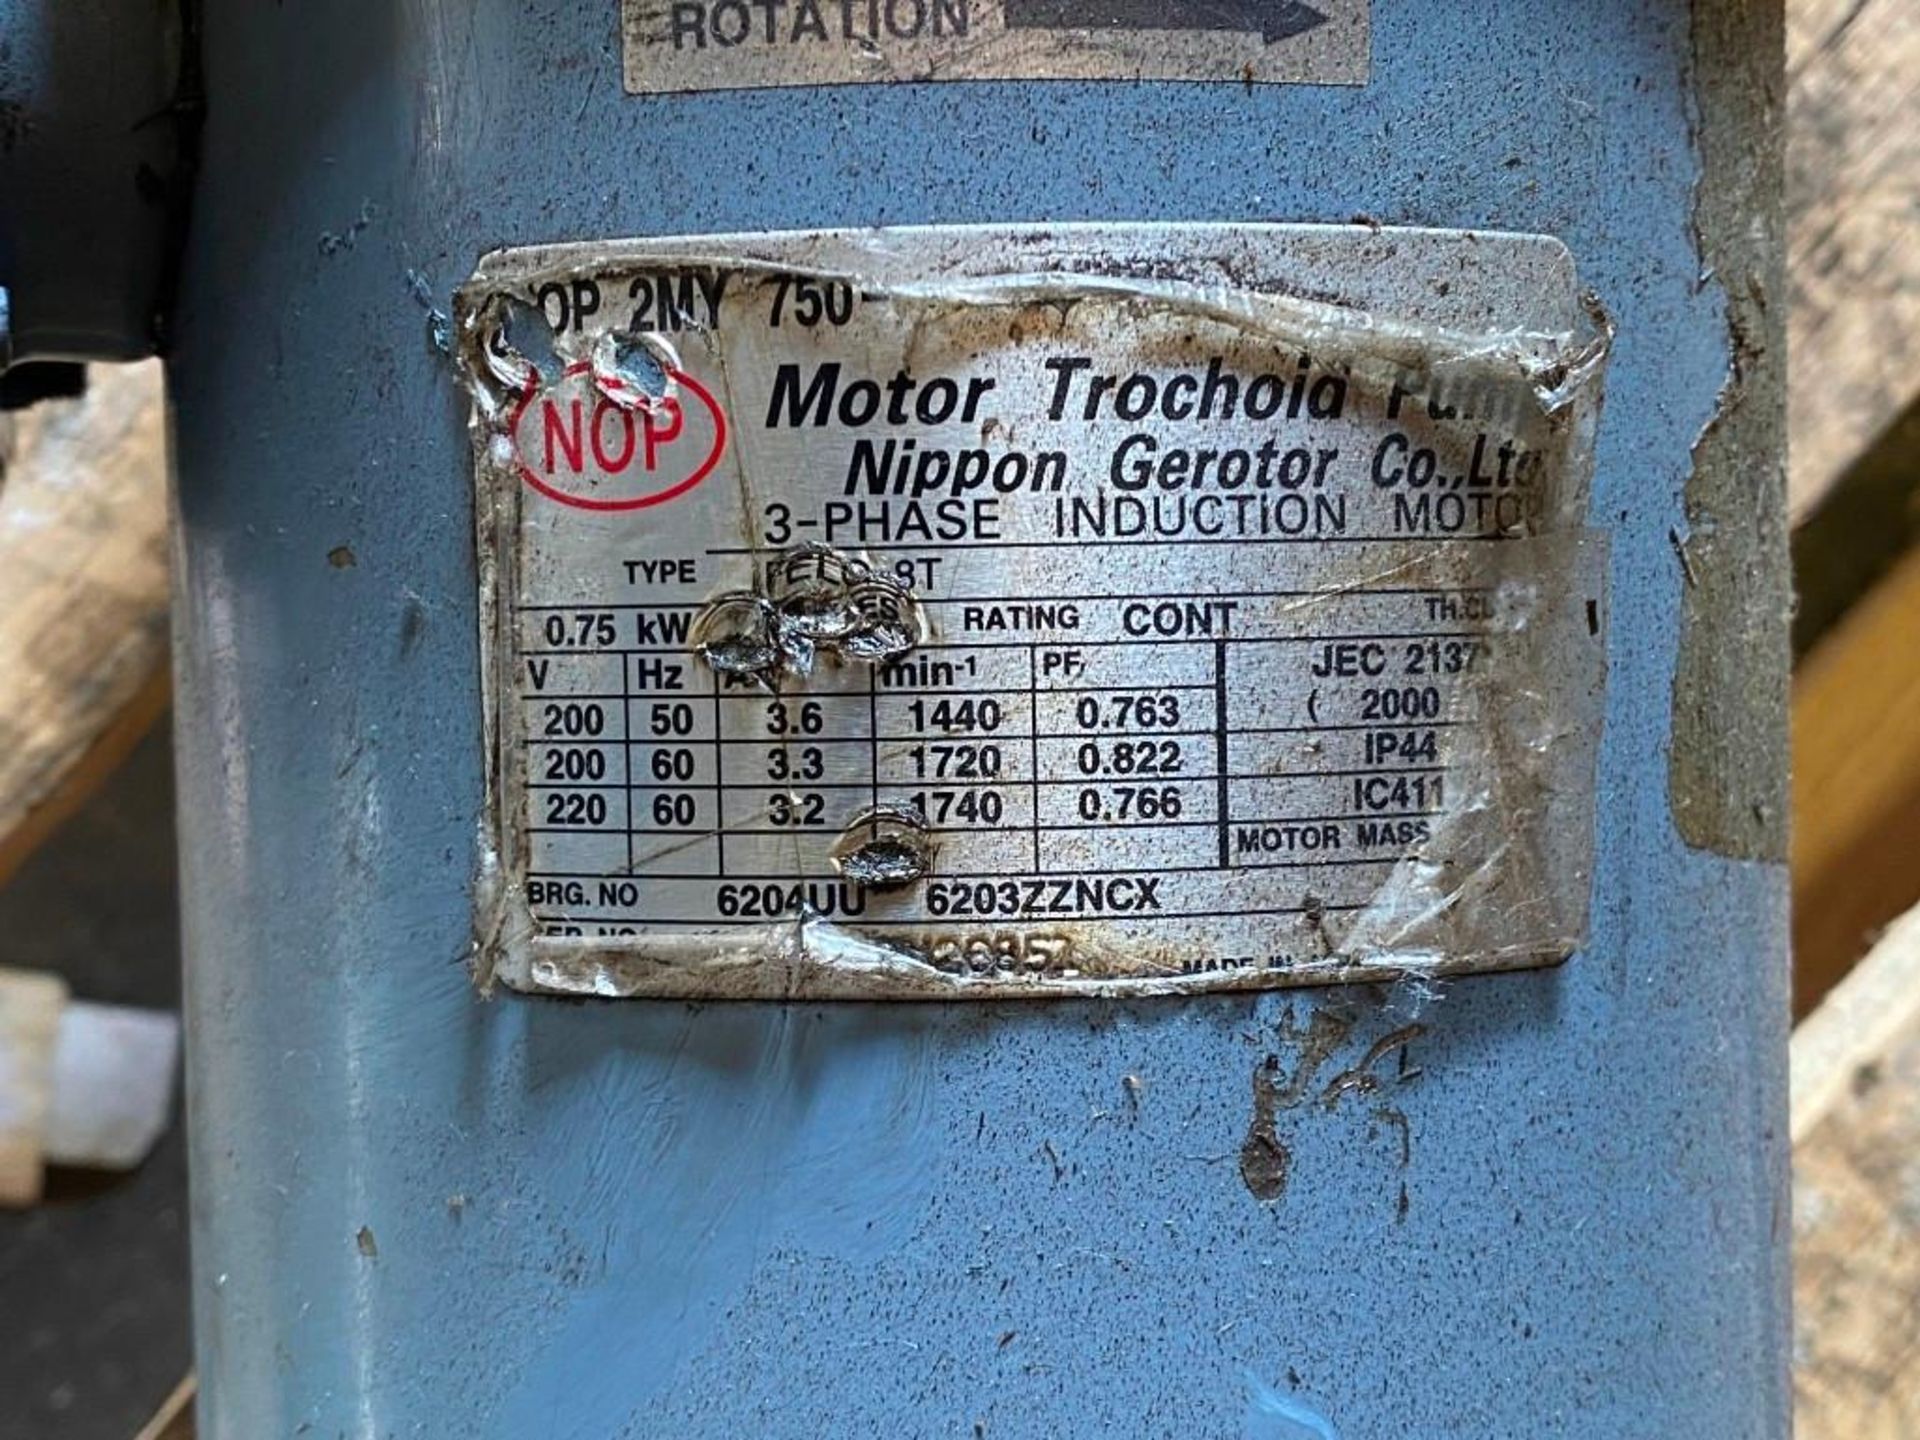 Nippon Gerotor #TOP-2MY 750?? Trochoid Pump - Image 3 of 3